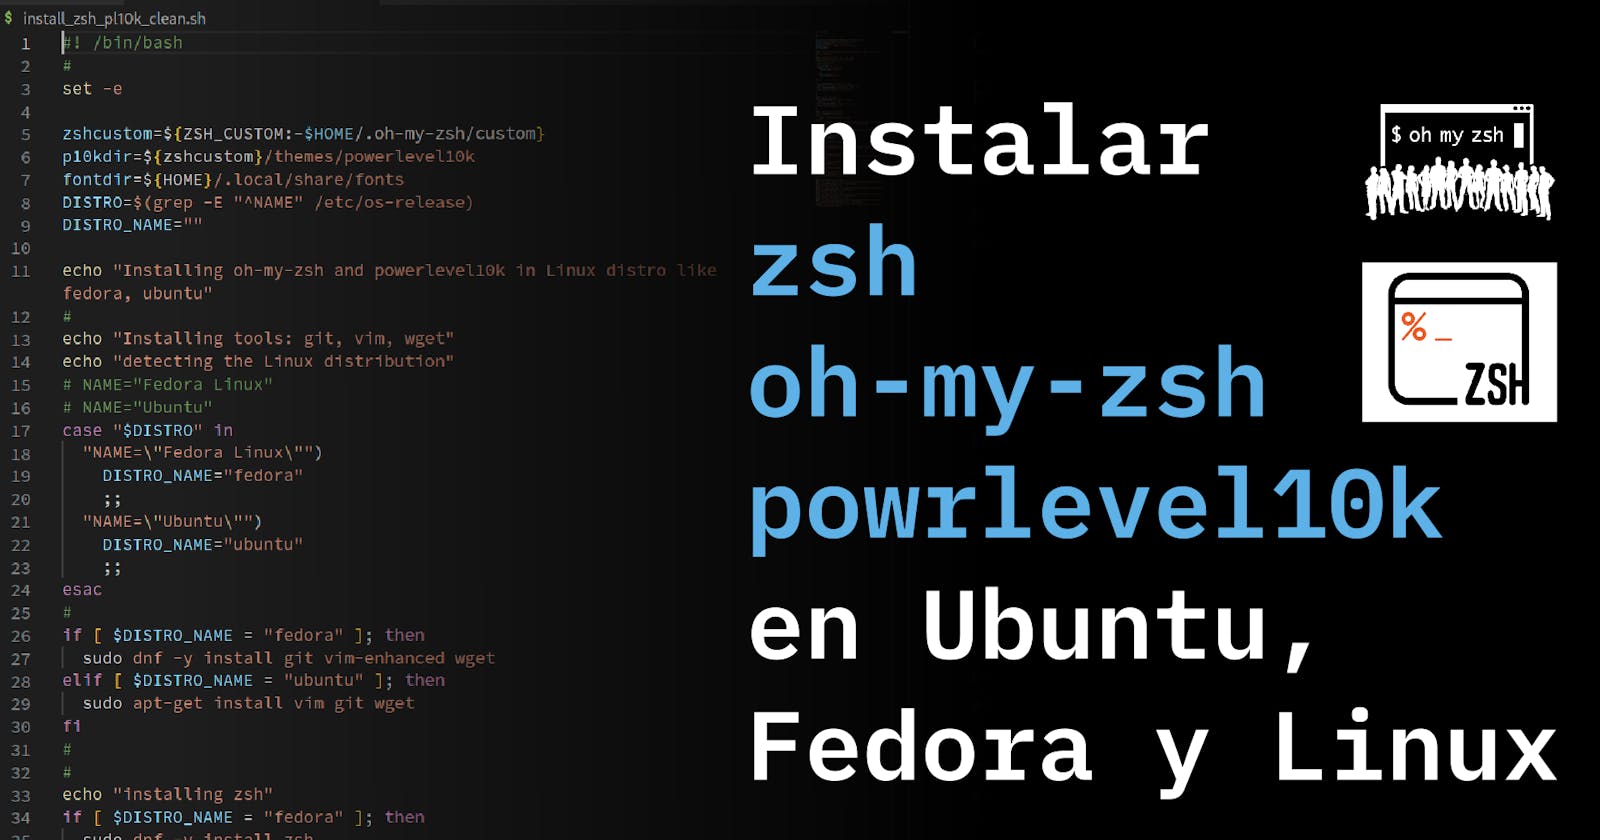 Como crear un script que instala zsh, oh-my-zsh y powrlevel10k en Linux, Ubuntu, Fedora